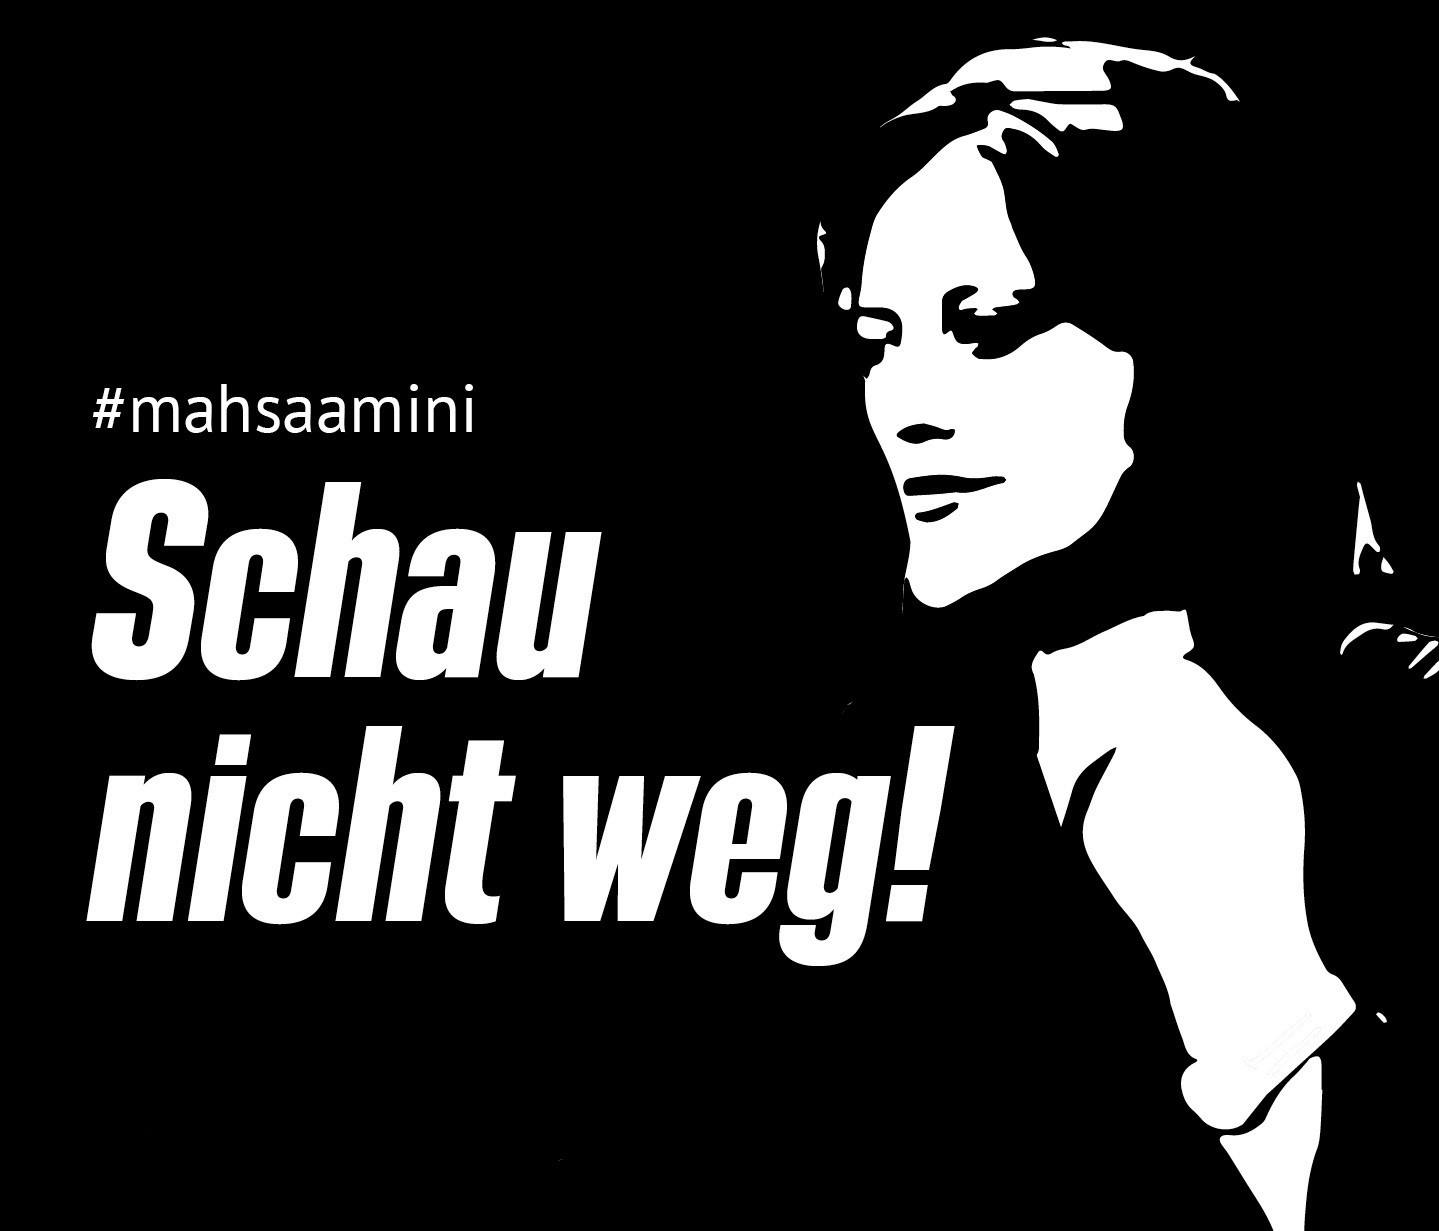 Schwarzer HIntergrund mit weißer Schrift. Portrait von Mahsa Amini und Schrift: "#mahsaamini; Schau nicht weg!"